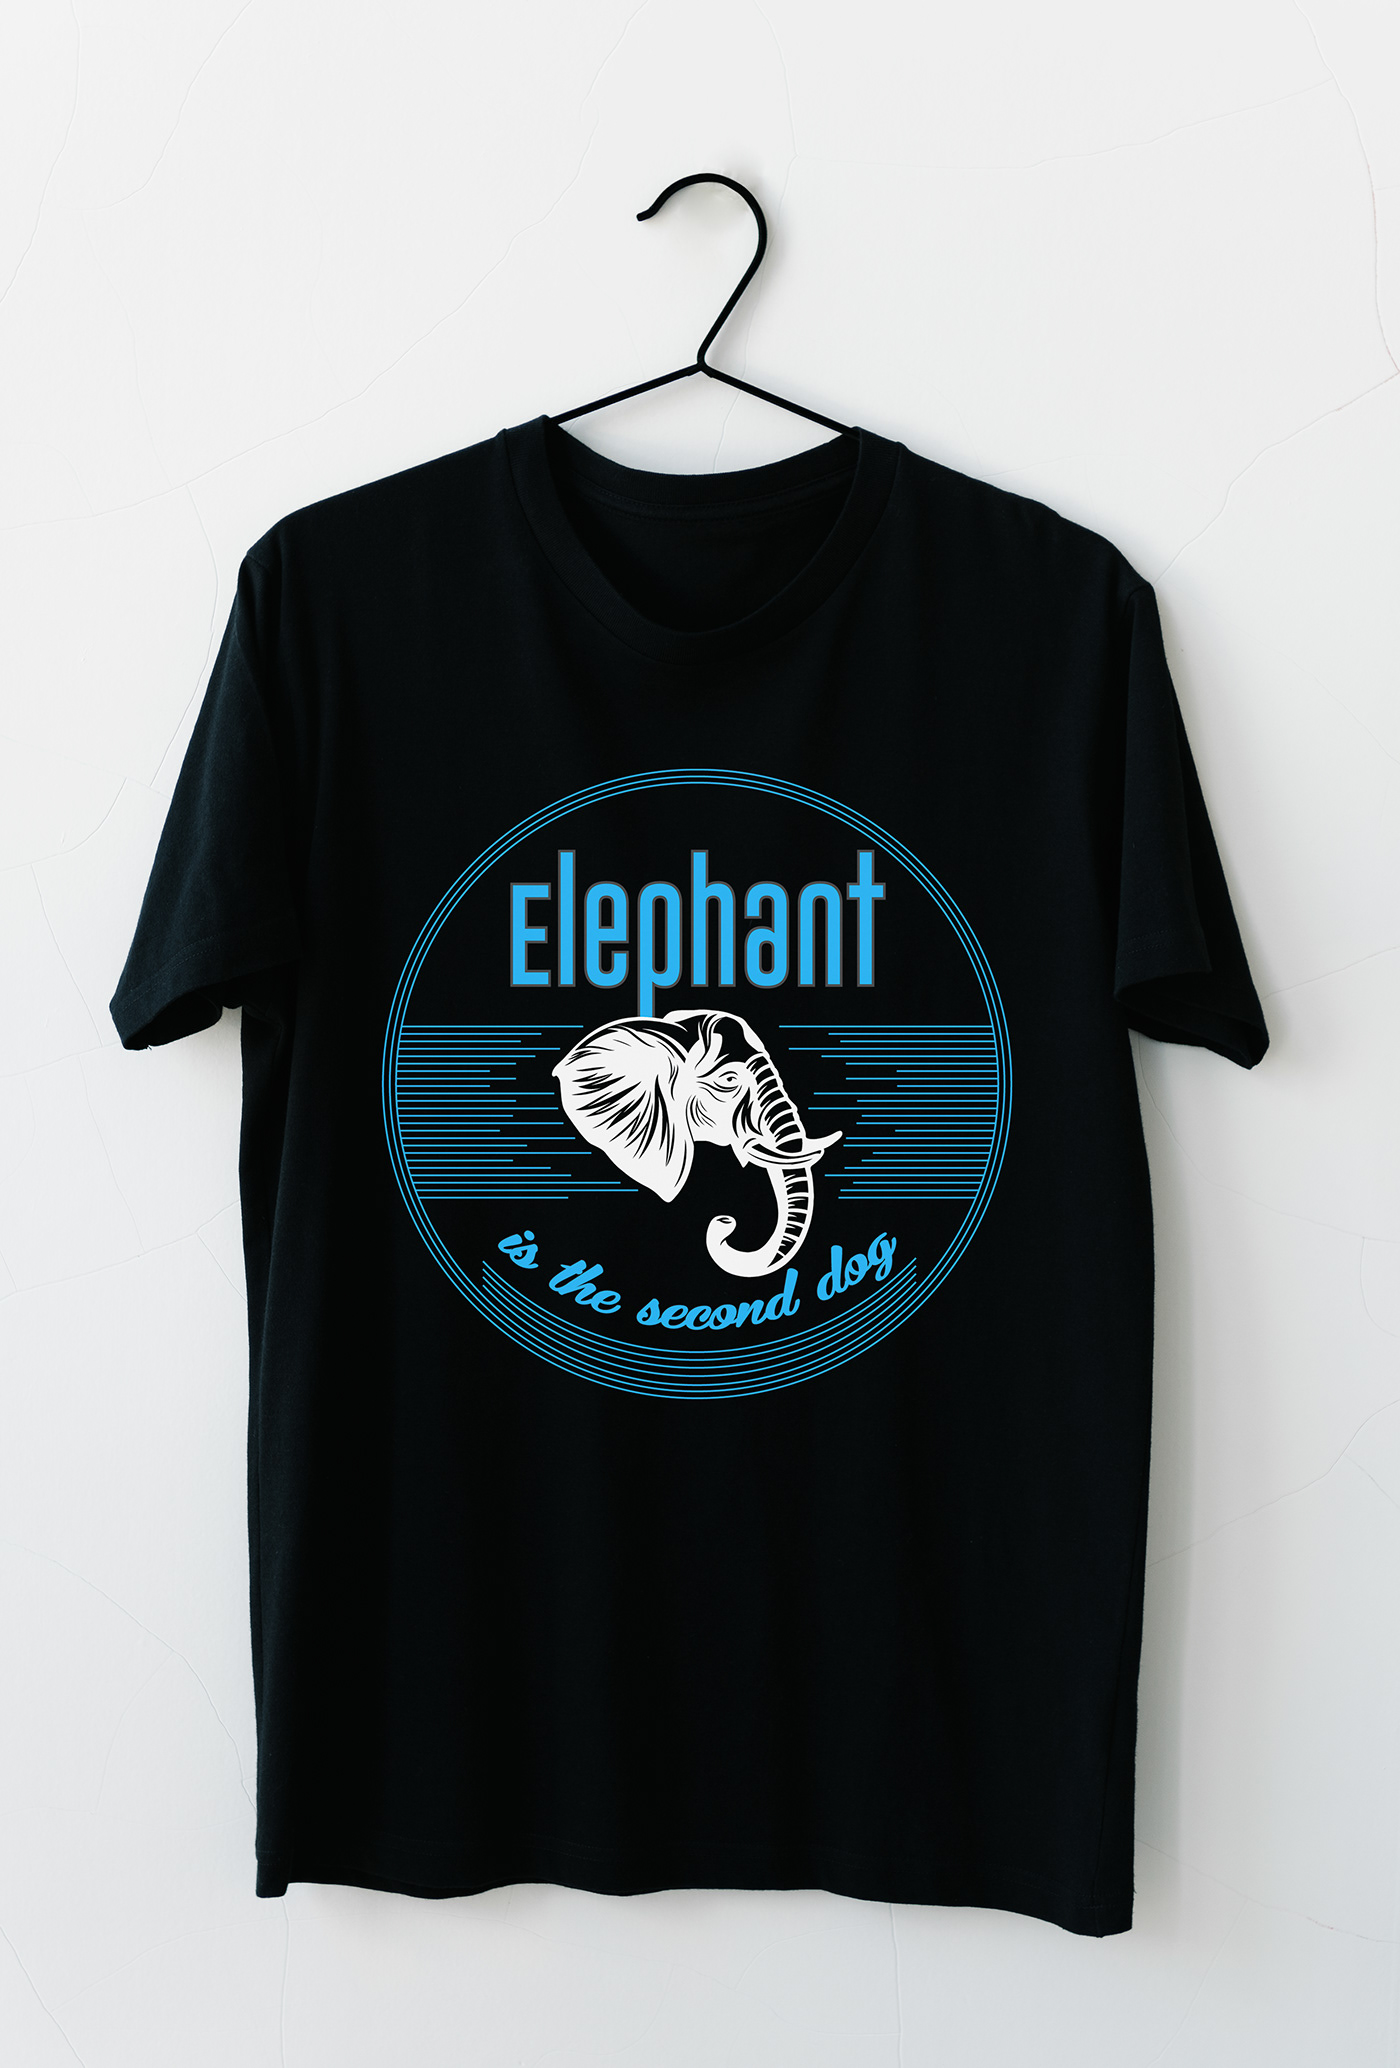 ACTIVE SHIRT Clothing fabrics fashion design elephant design logo t shirt design T Shirt shirt